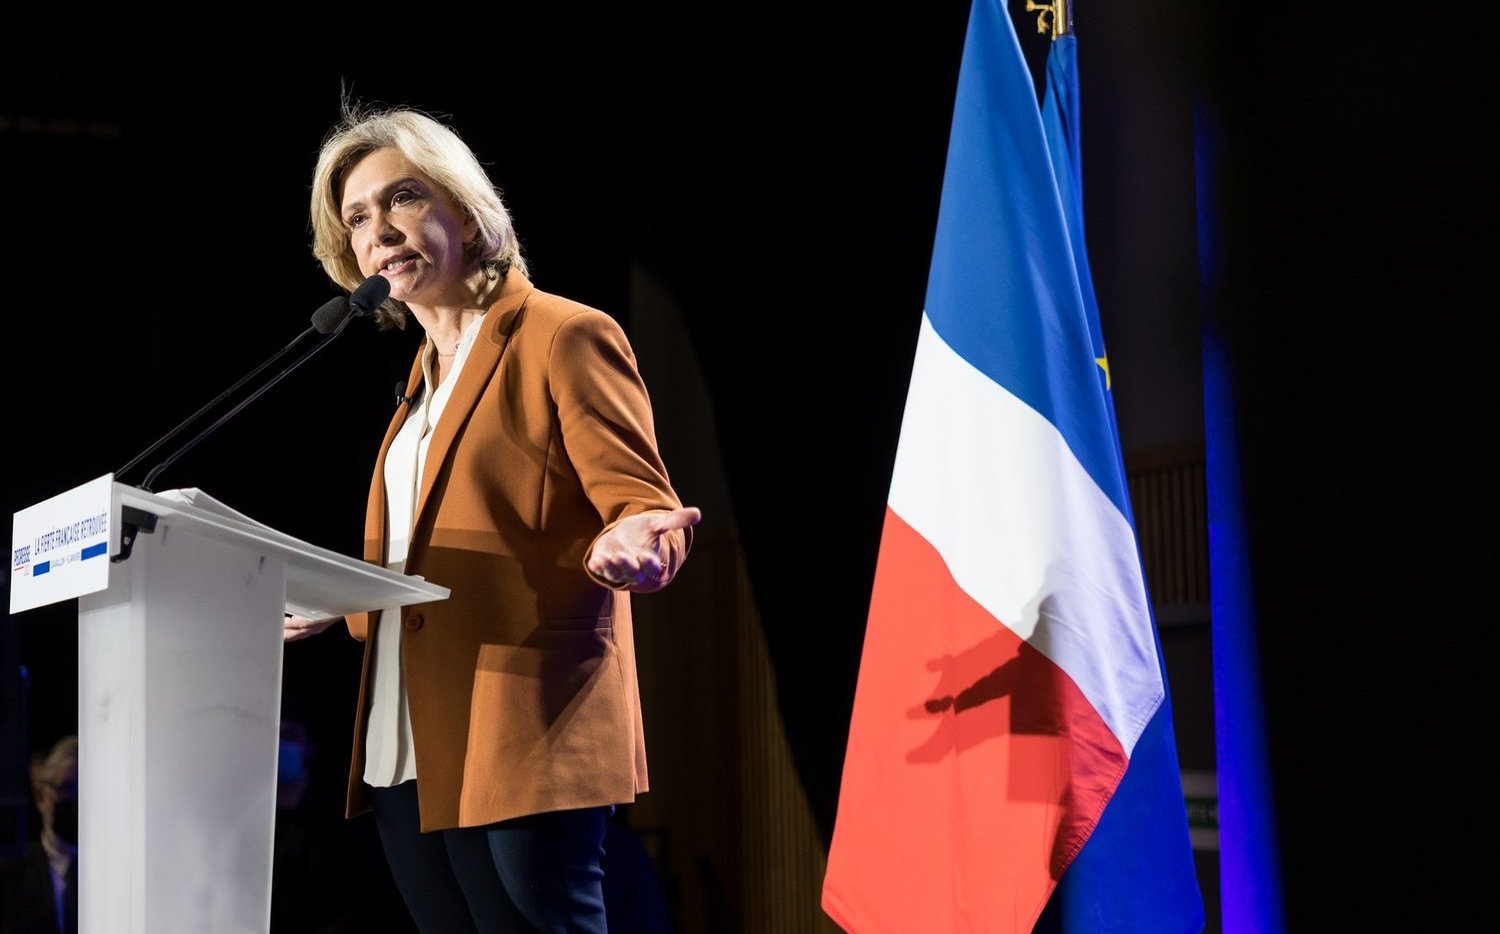 極右派會在第二輪投票相挺  法國或將出現首位女總統 | 國際 | New